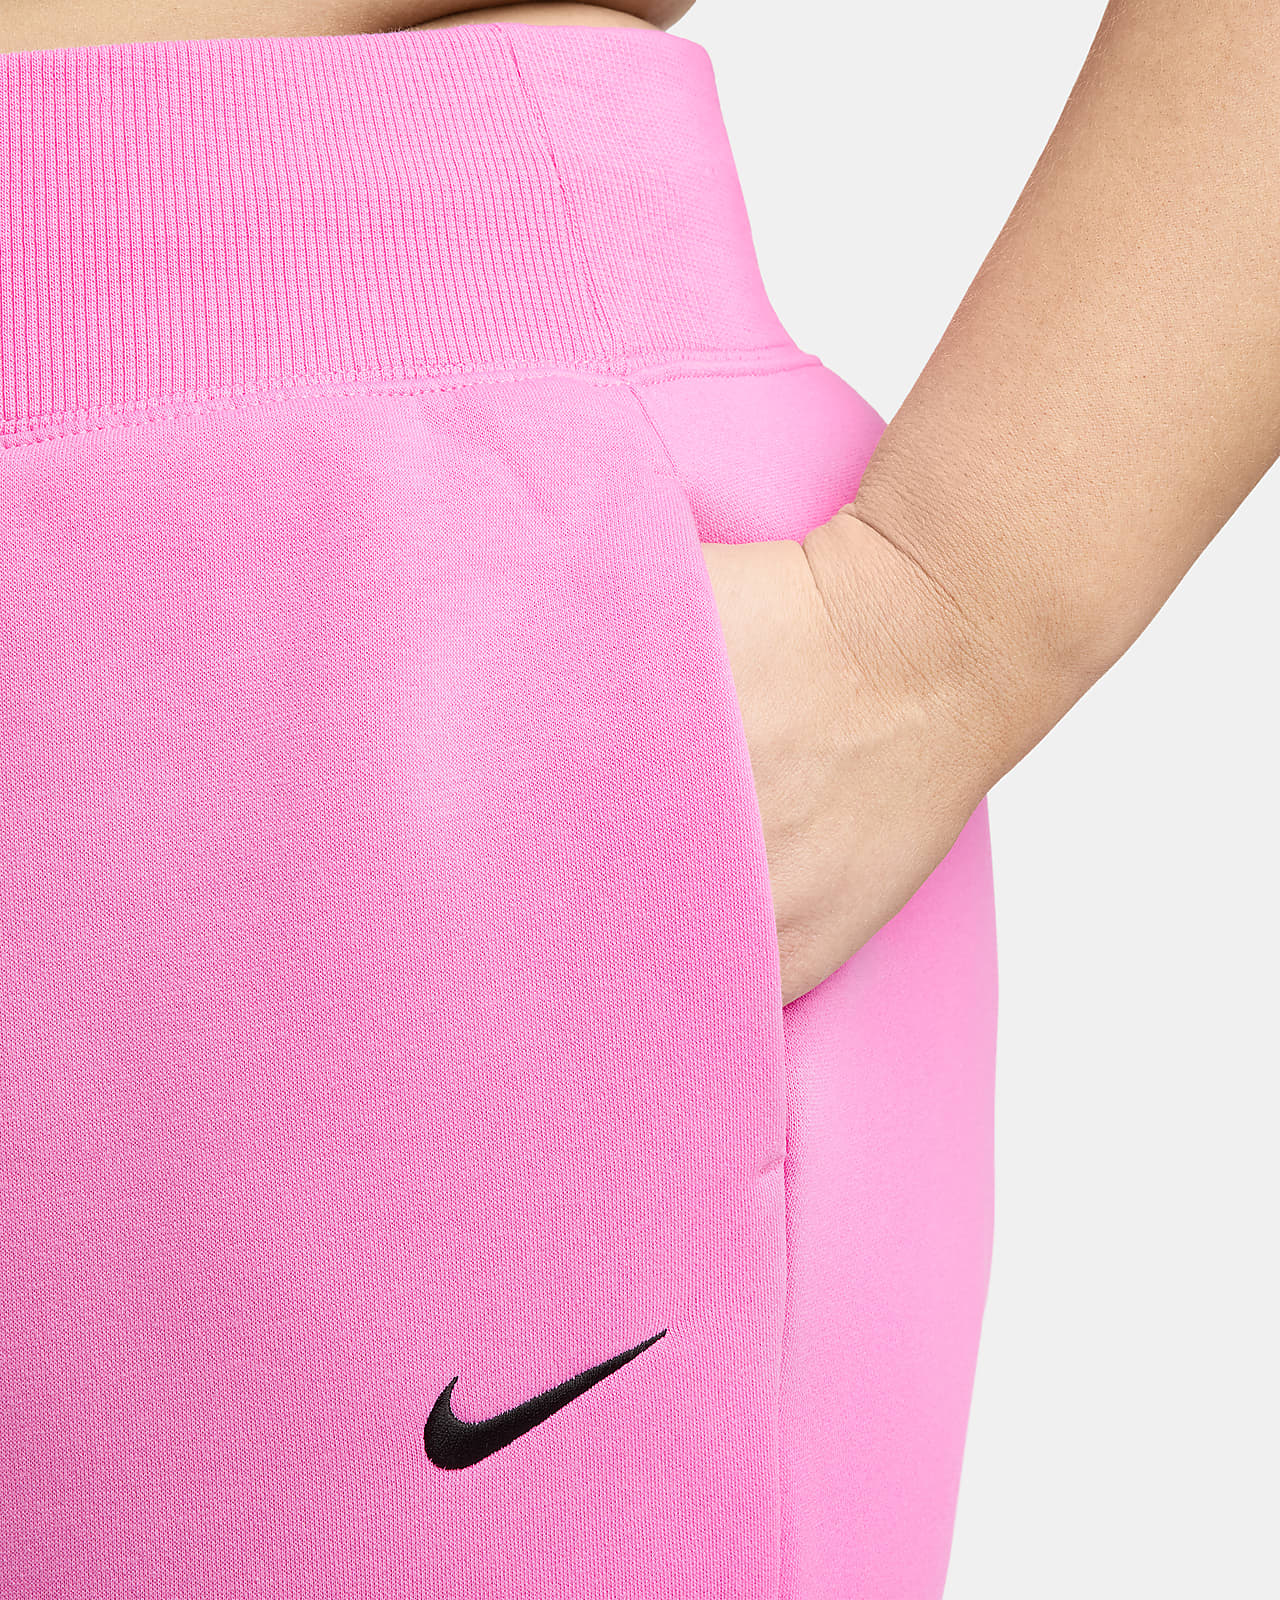 Nike Sportswear Phoenix Fleece Women's High-Waisted Joggers (Plus Size).  Nike SI